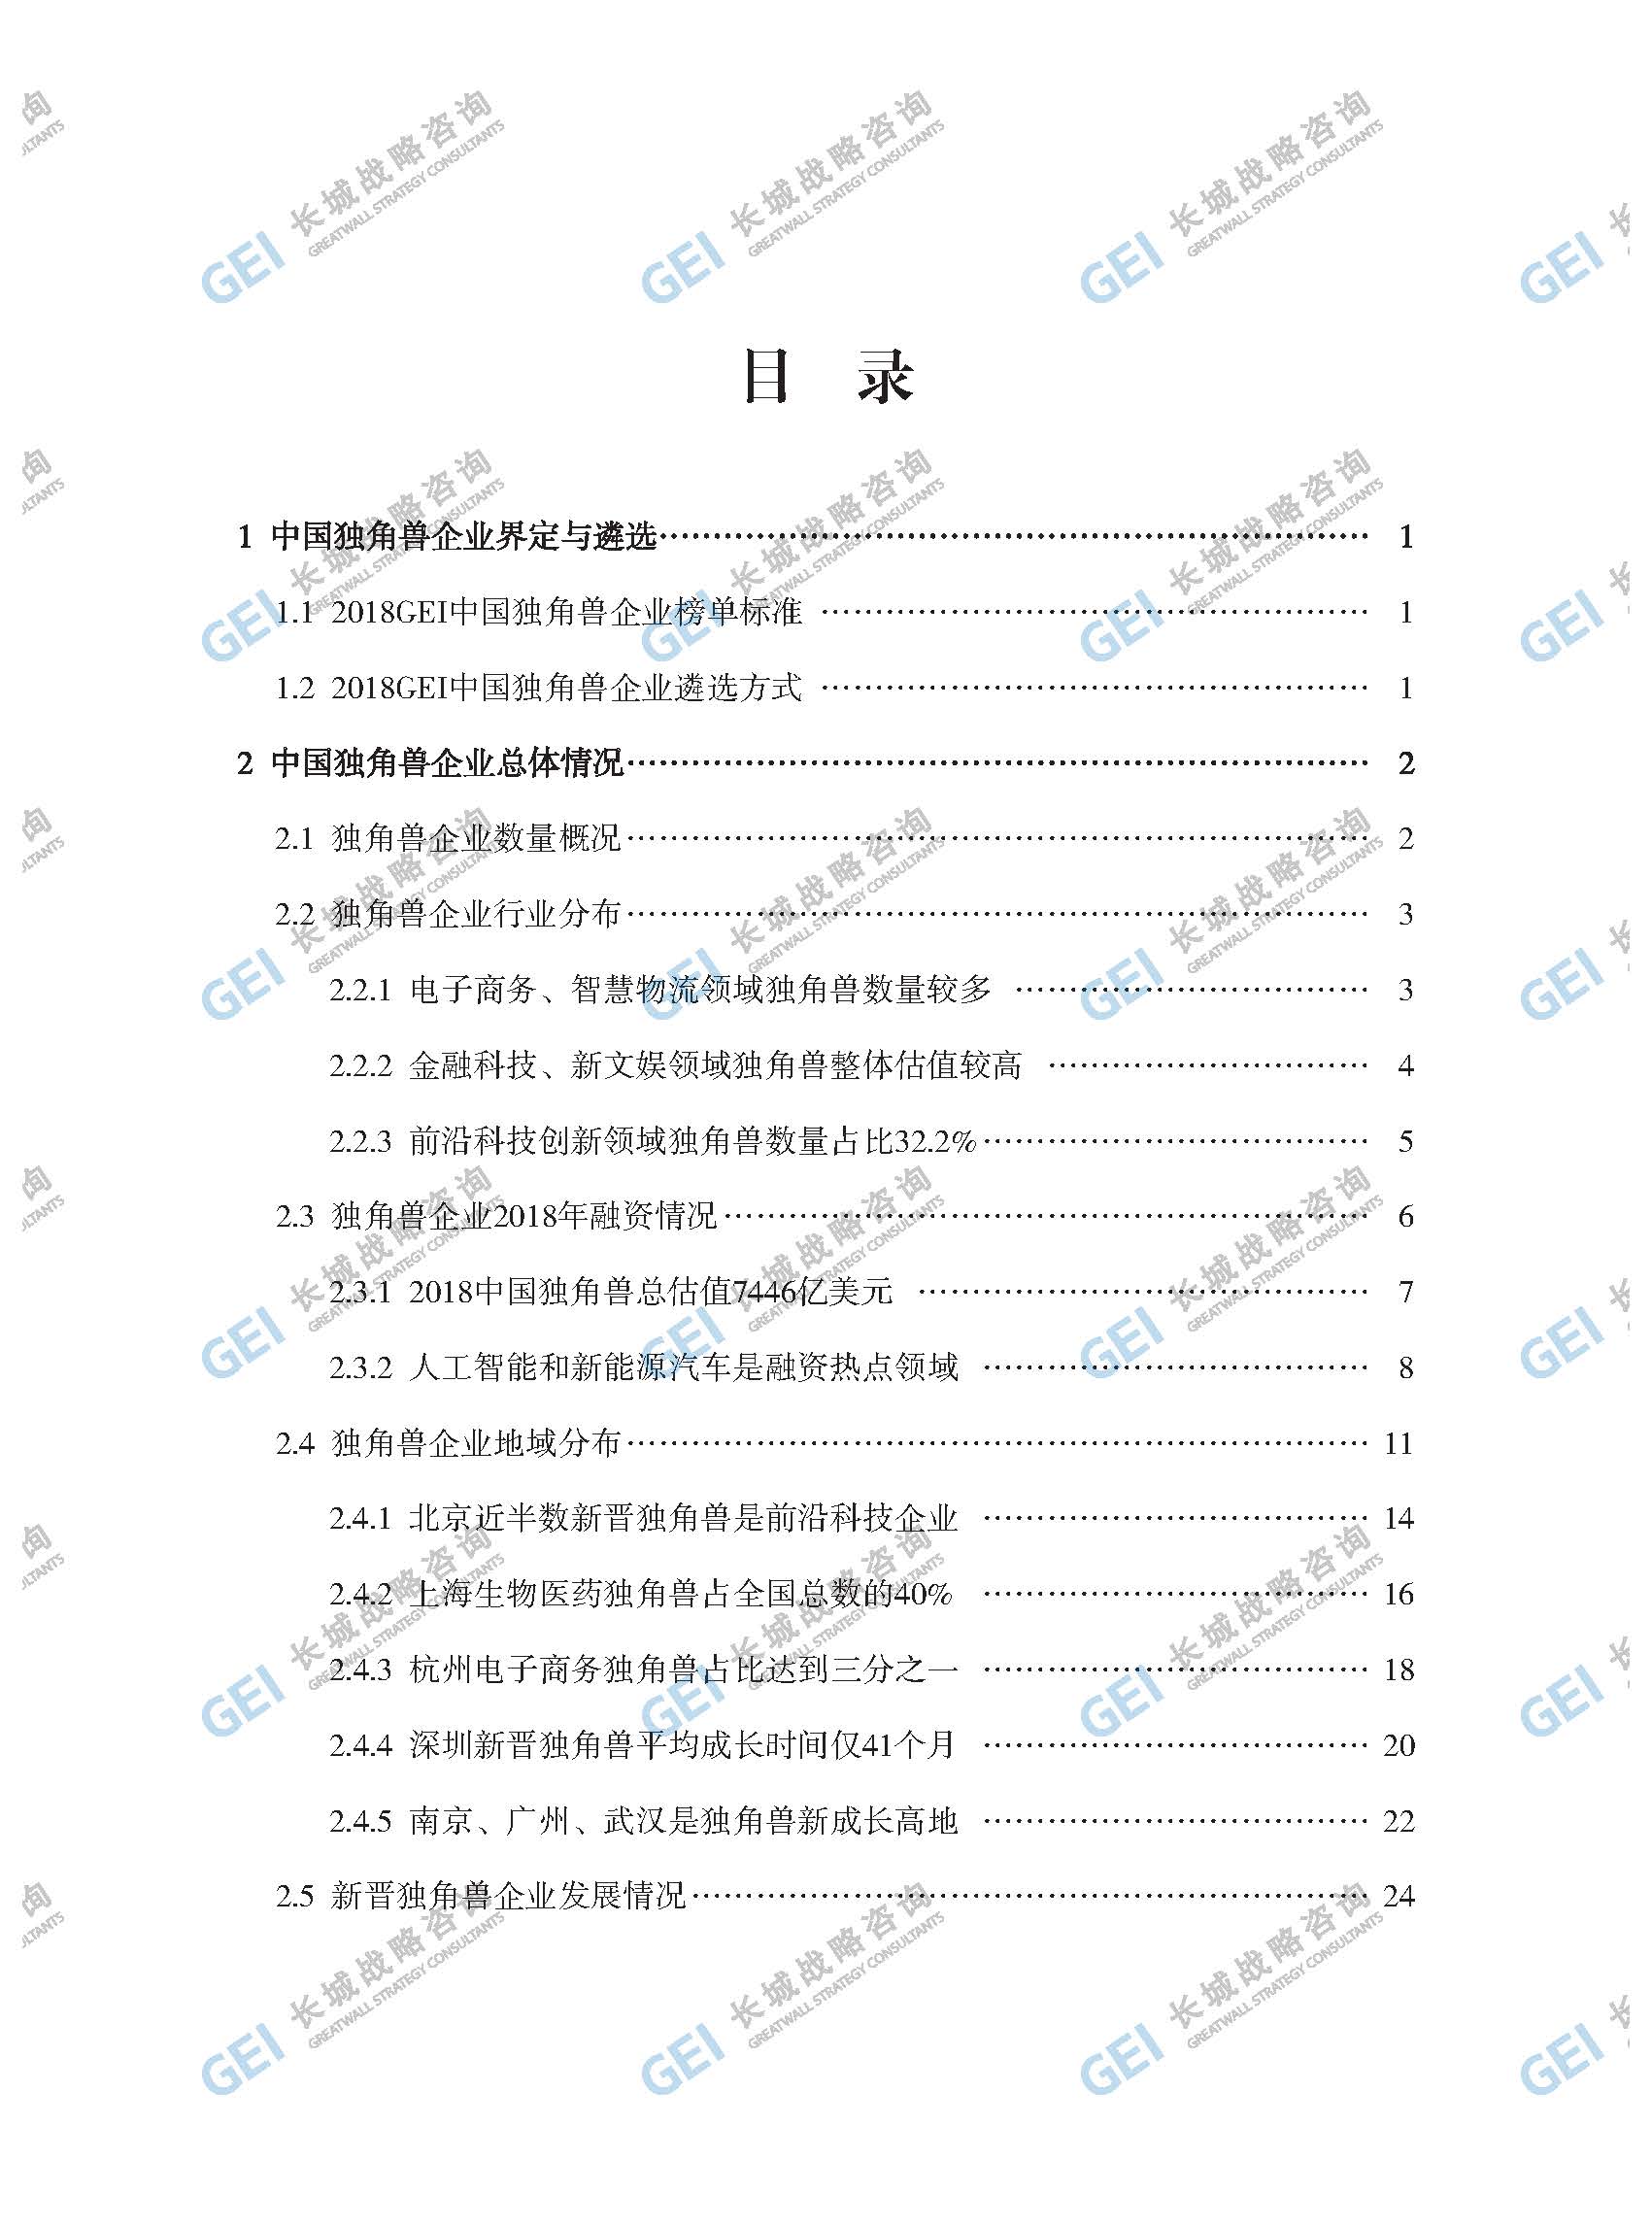 2018年中国独角兽企业研究报告-加水印-已压缩_页面_003.jpg